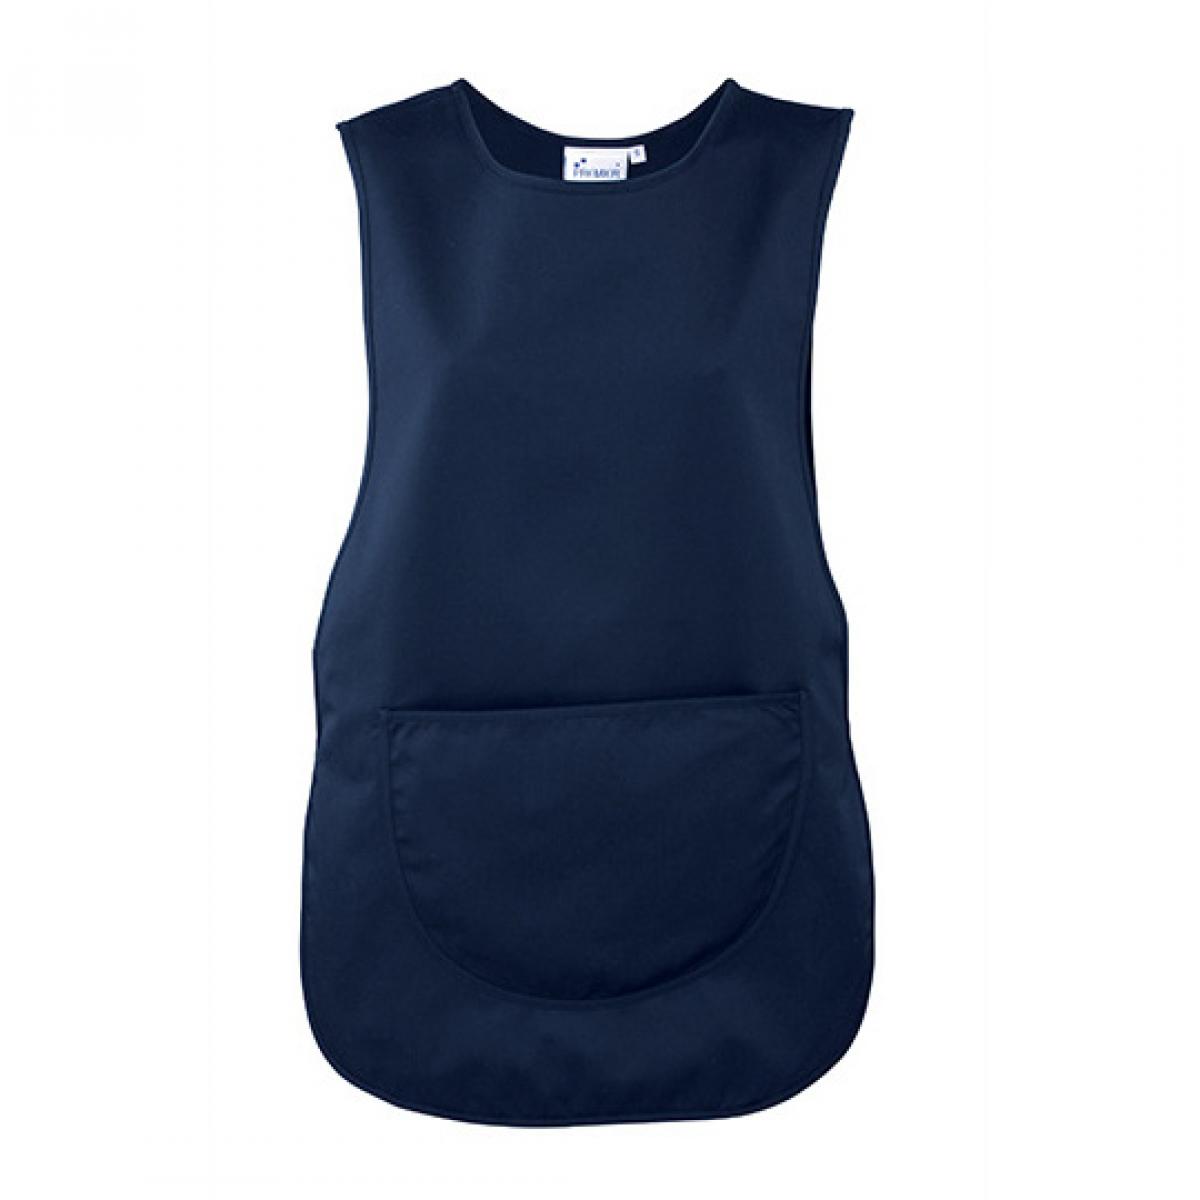 Hersteller: Premier Workwear Herstellernummer: PR171 Artikelbezeichnung: Women`s Pocket Tabard - Waschbar bis 60 °C Farbe: Navy (ca. Pantone 2766)